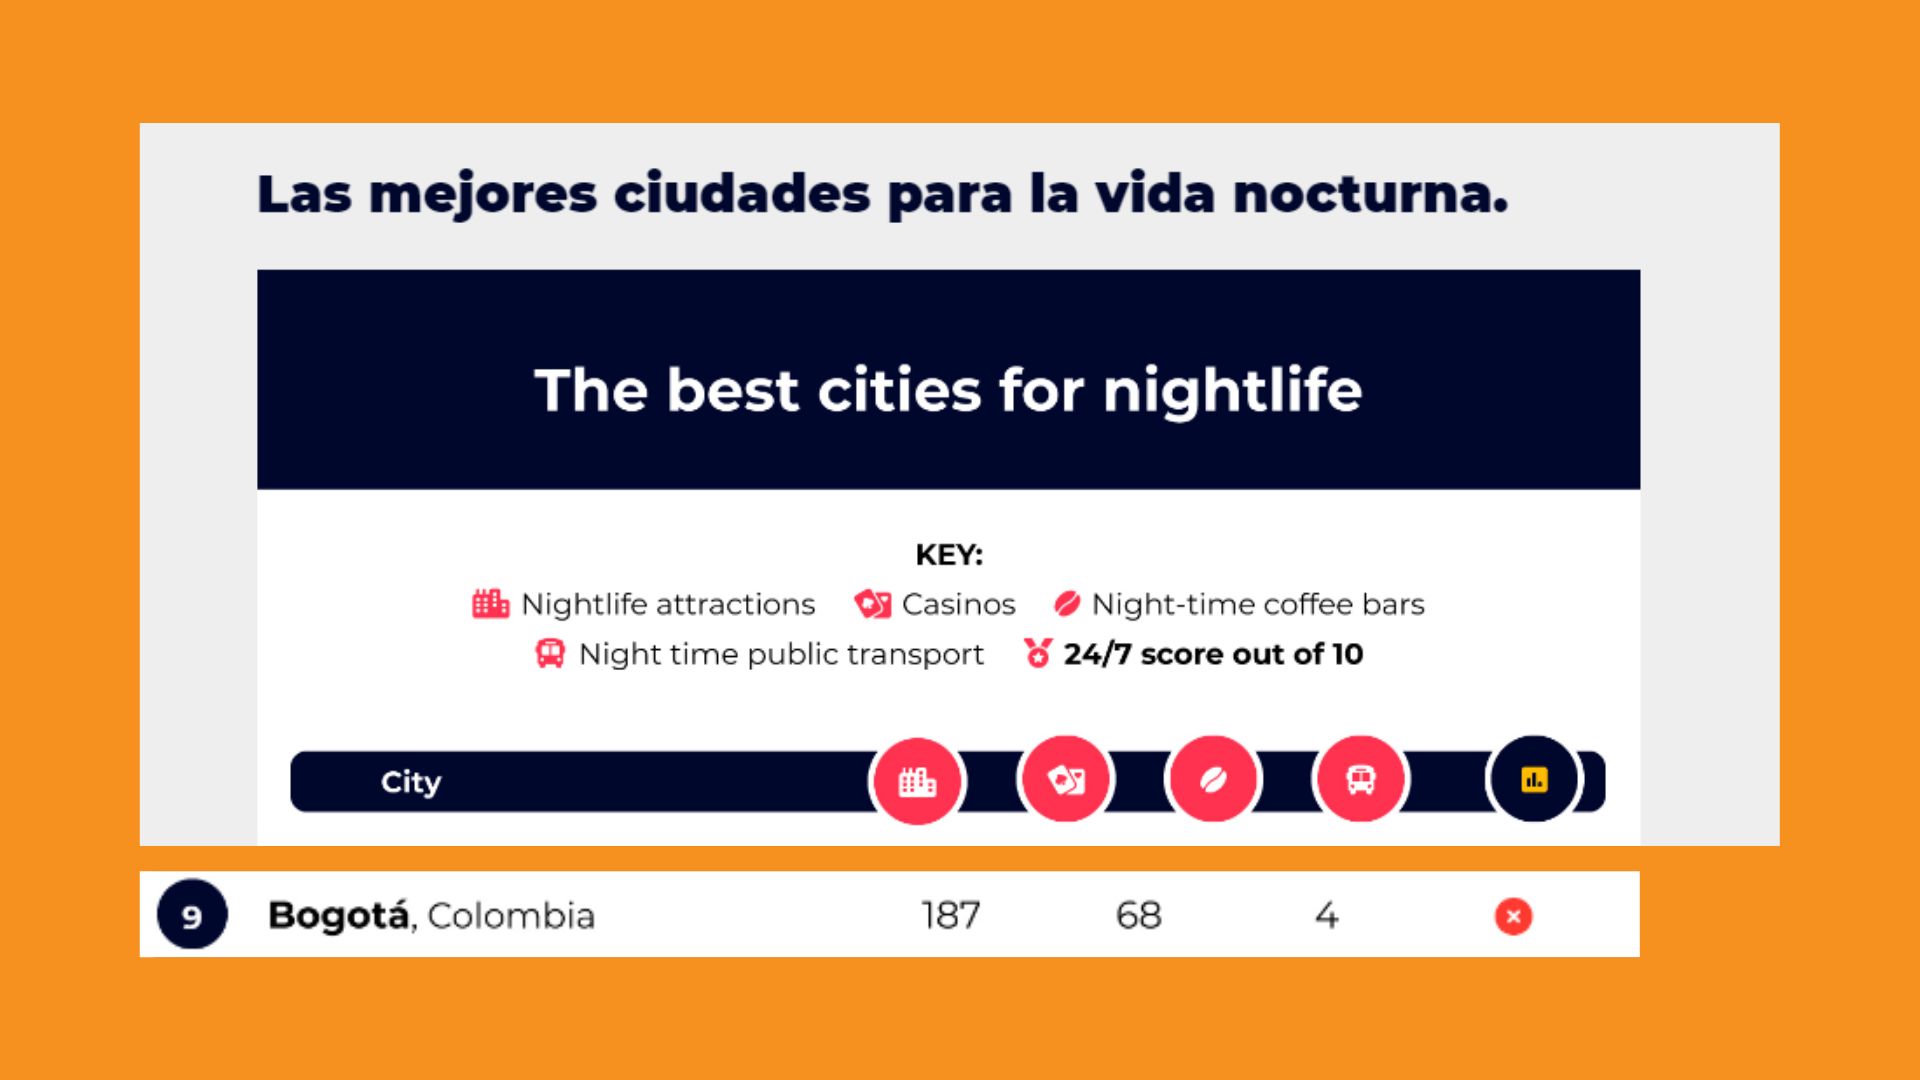 Bogotá dentro de las 10 ciudades con más actividades nocturnas